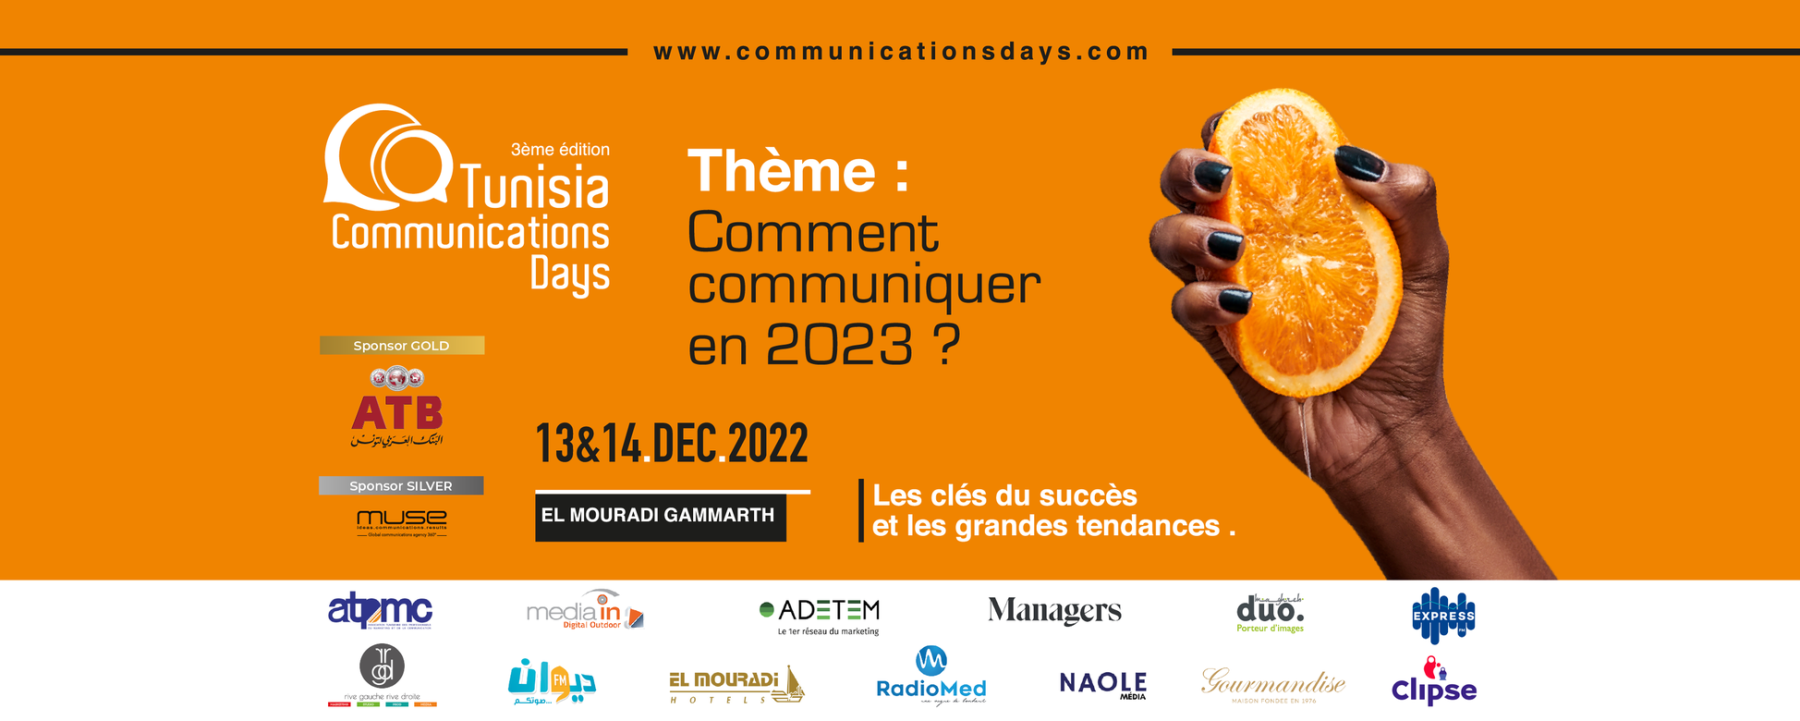 3ème édition Tunisia Communications Days